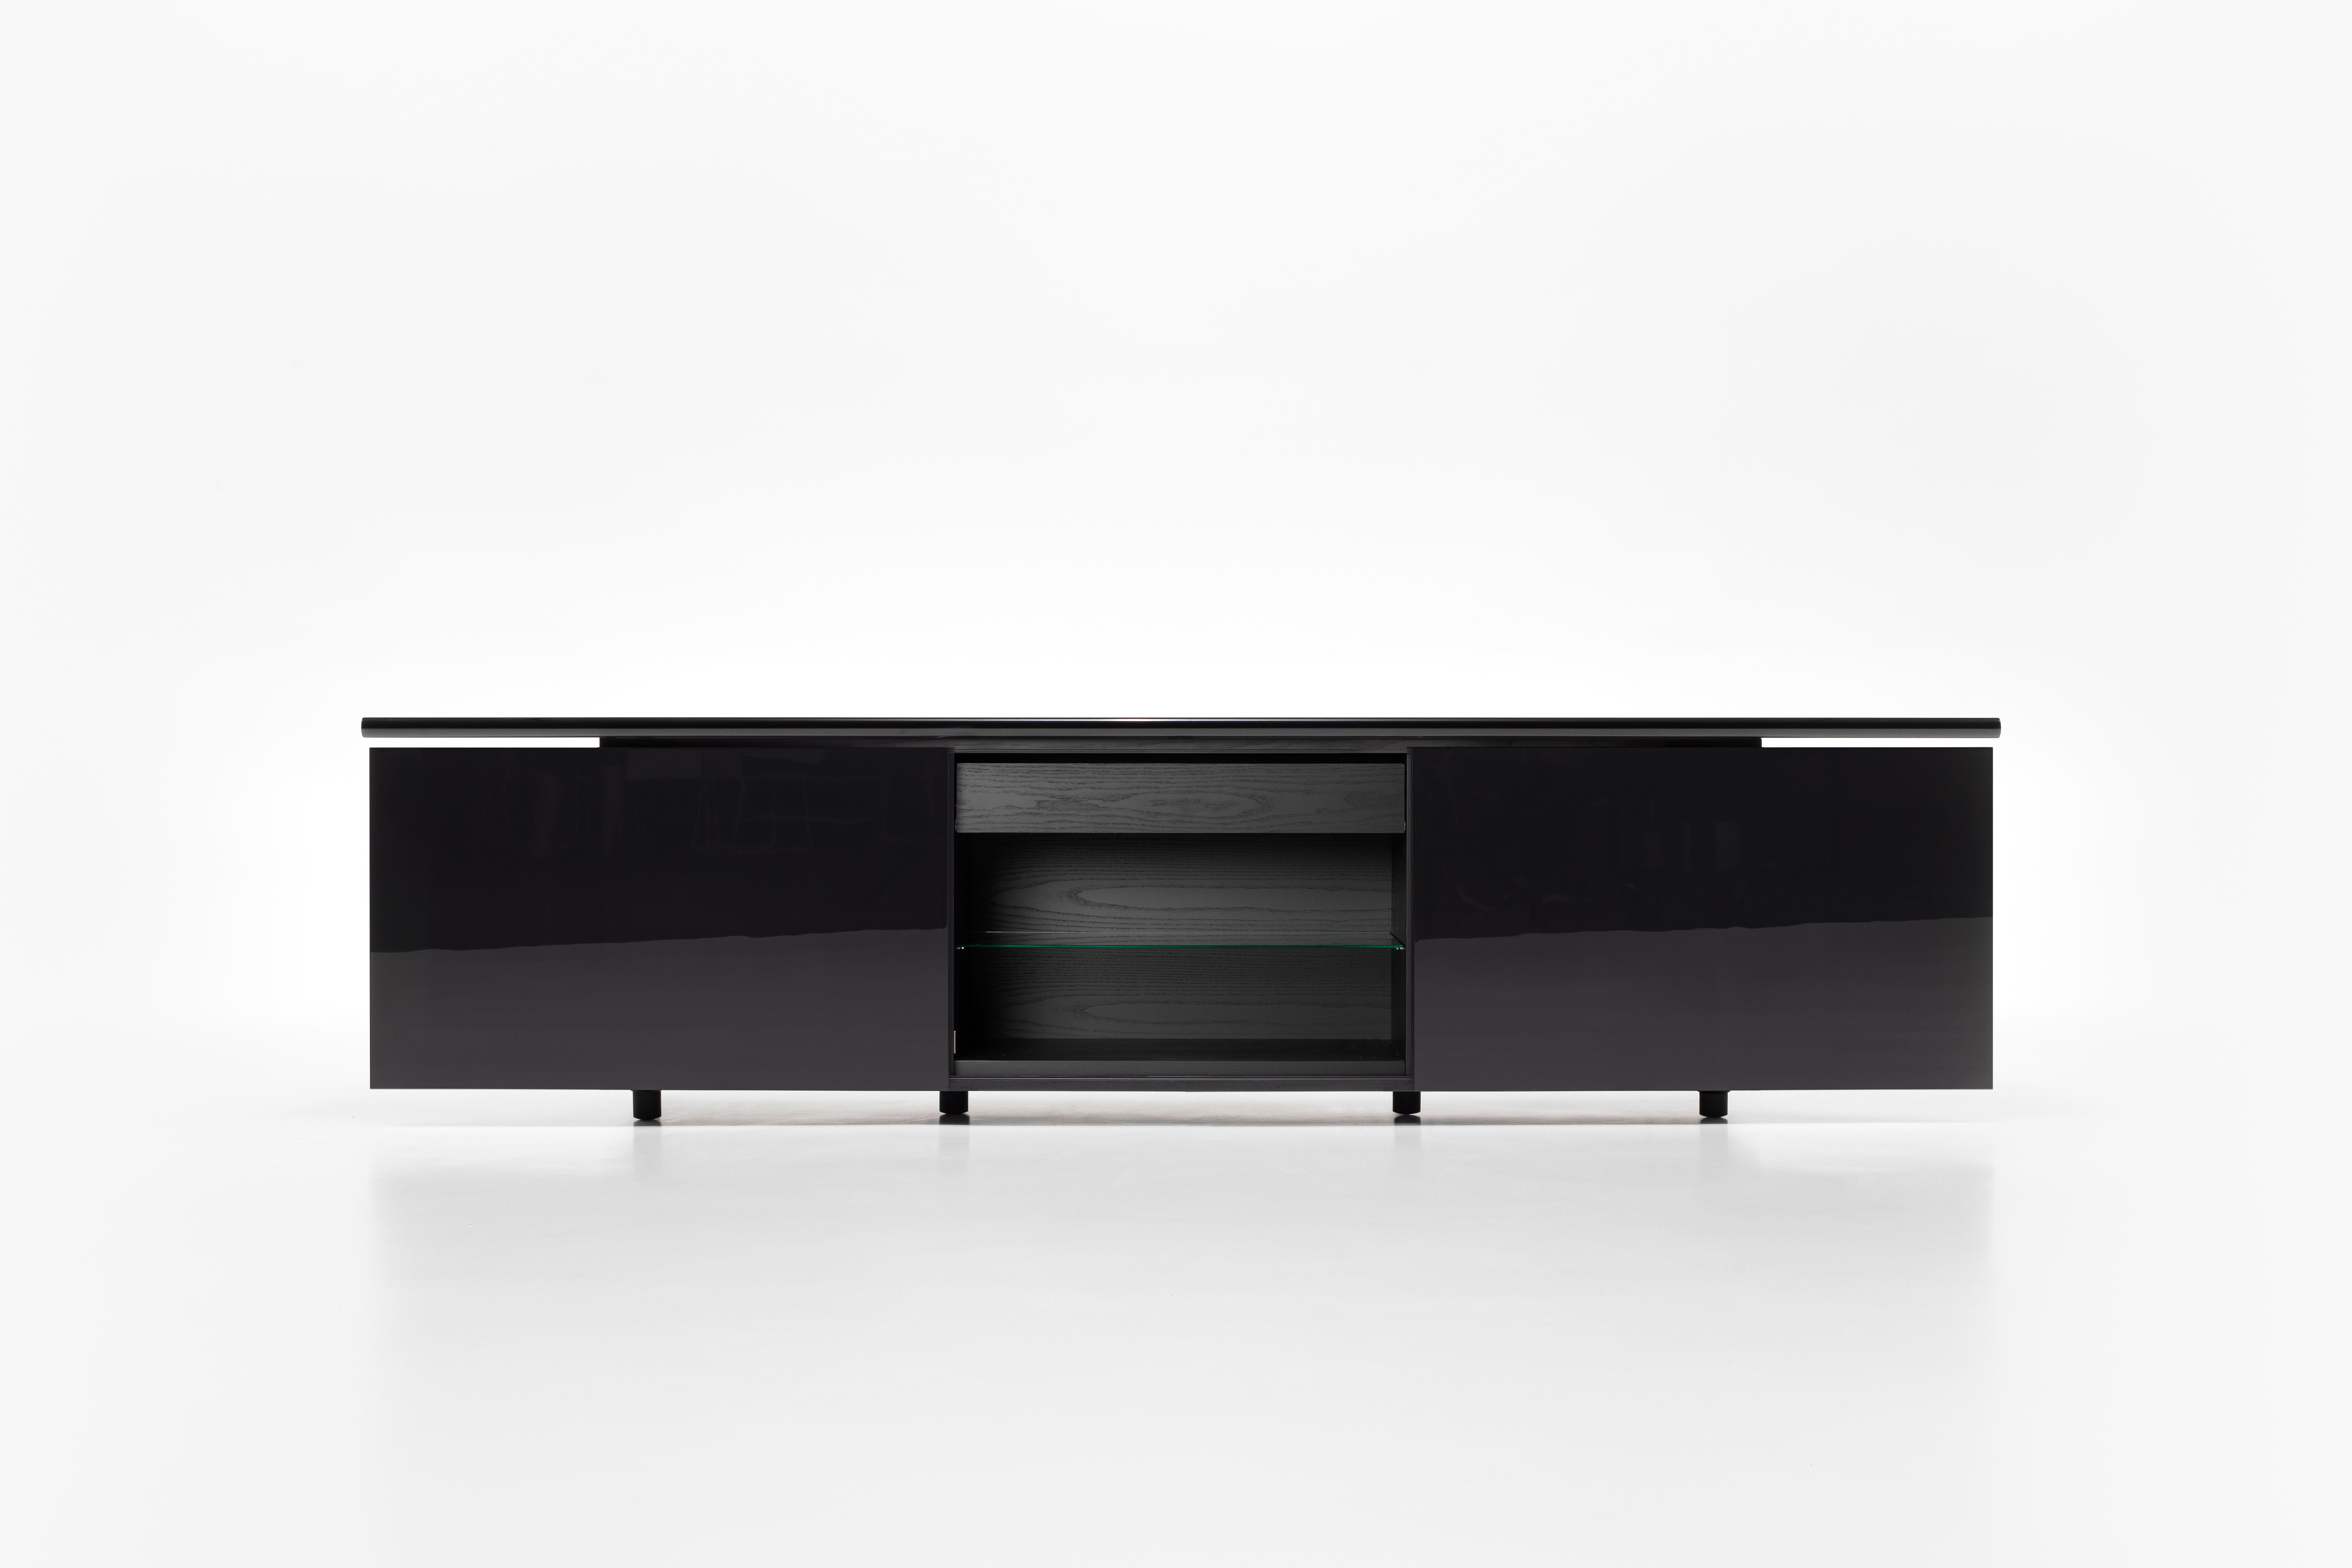 Une icône du design hors du temps et des modes. Sheraton offre un nouvel équilibre entre un meuble fermé extrêmement simple et formellement pur et un meuble plus fonctionnel et ouvert, avec des portes coulissantes et alignées.
Il représente